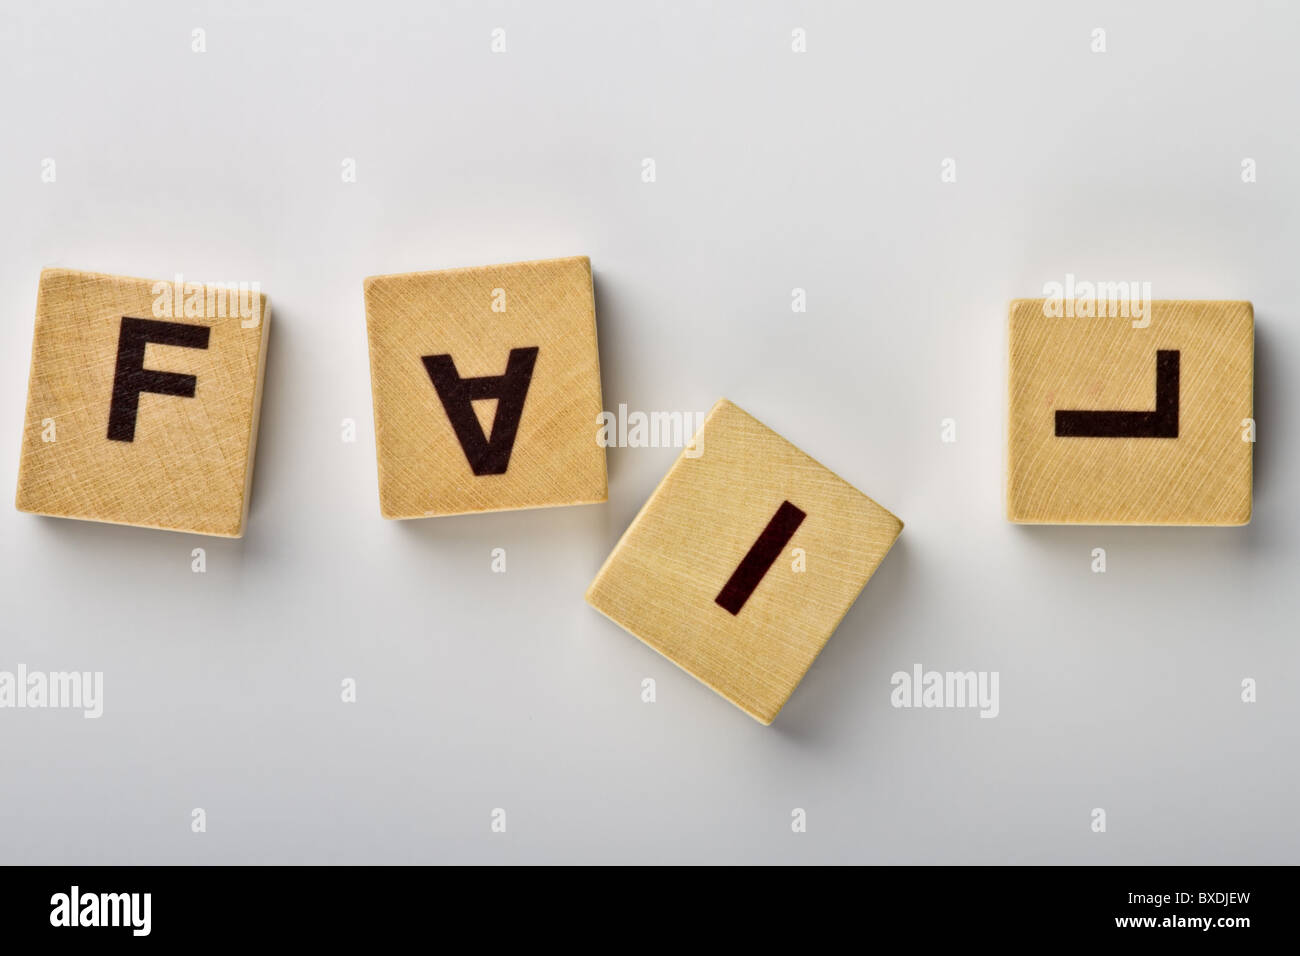 Holz-Magnete mit schiefen Buchstaben Rechtschreibung "Scheitern" Stockfoto